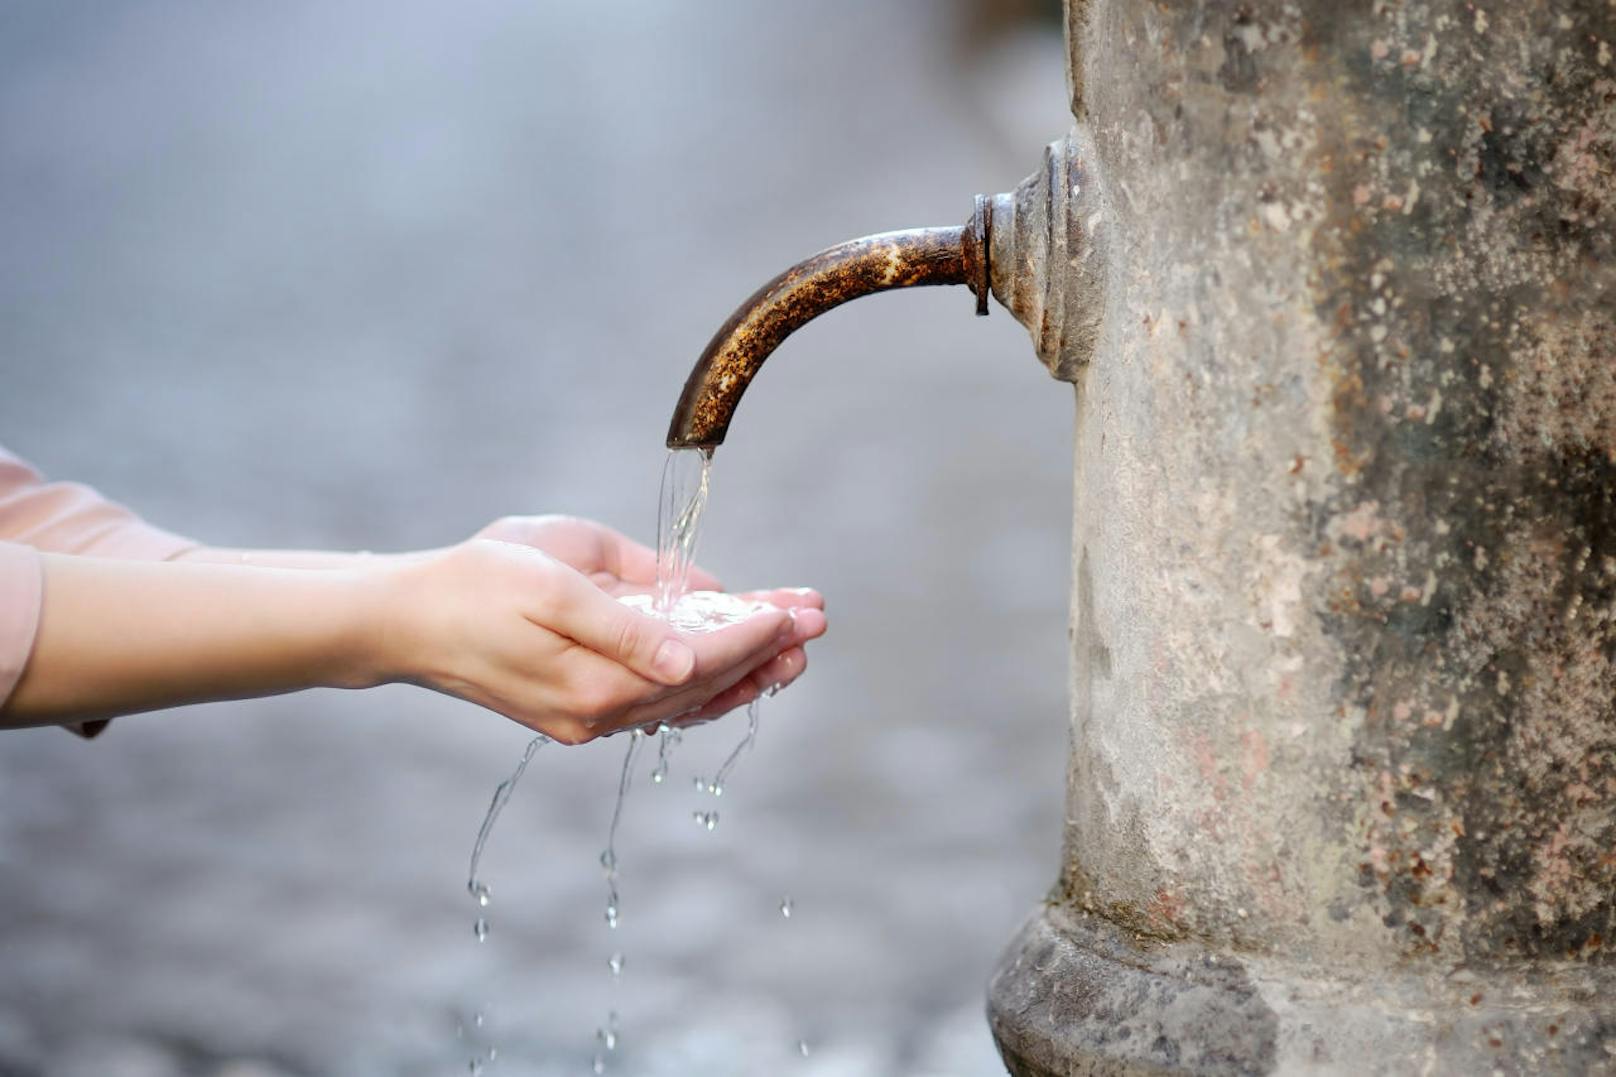 Beim Trinken aus öffentlichen Brunnen dürfen die Lippen auf keinen Fall den metallenen Wasserhahn berühren. Wie die Römer sollte man mit seiner Hand das Wasser auffangen und daraus trinken.